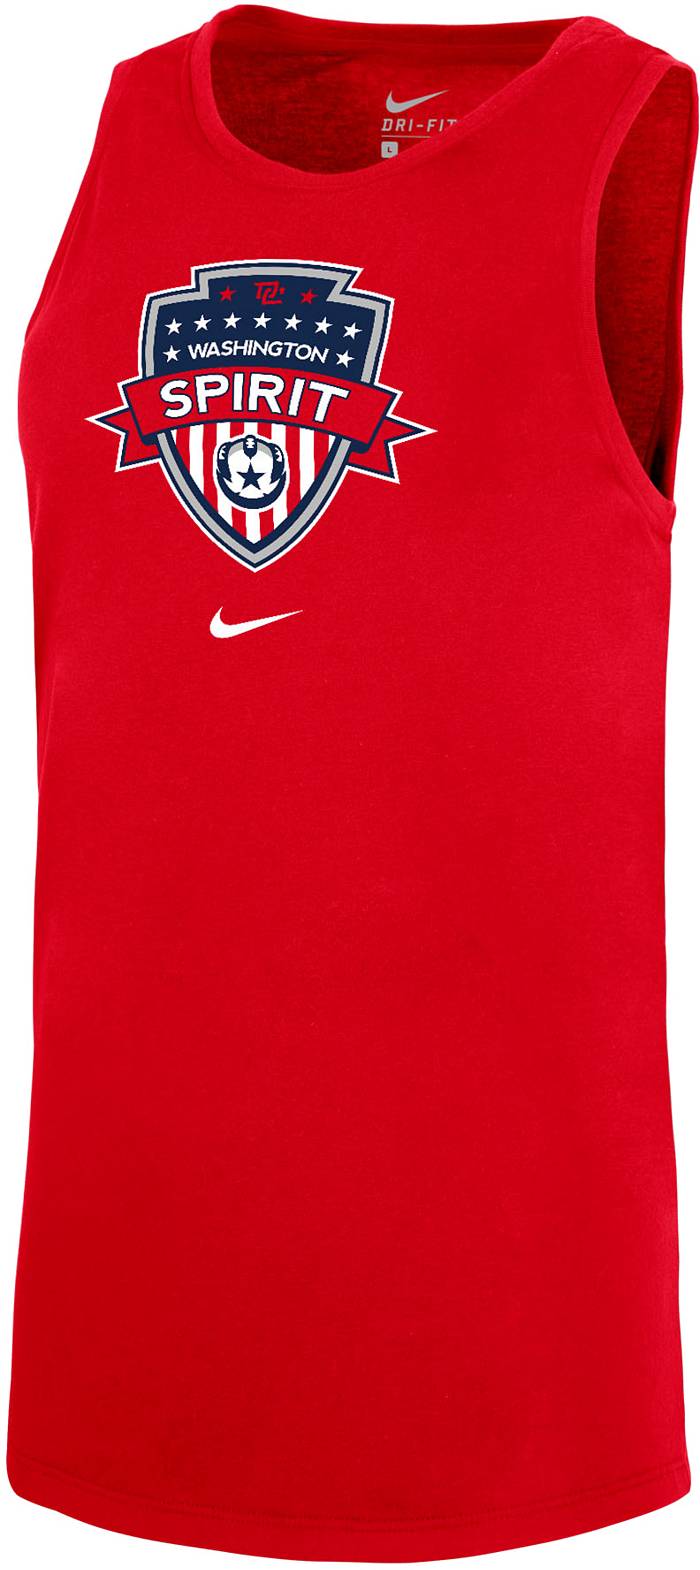 Nike Washington Spirit Crest Red Dri-Fit Tomboy Tank, Women's, Large